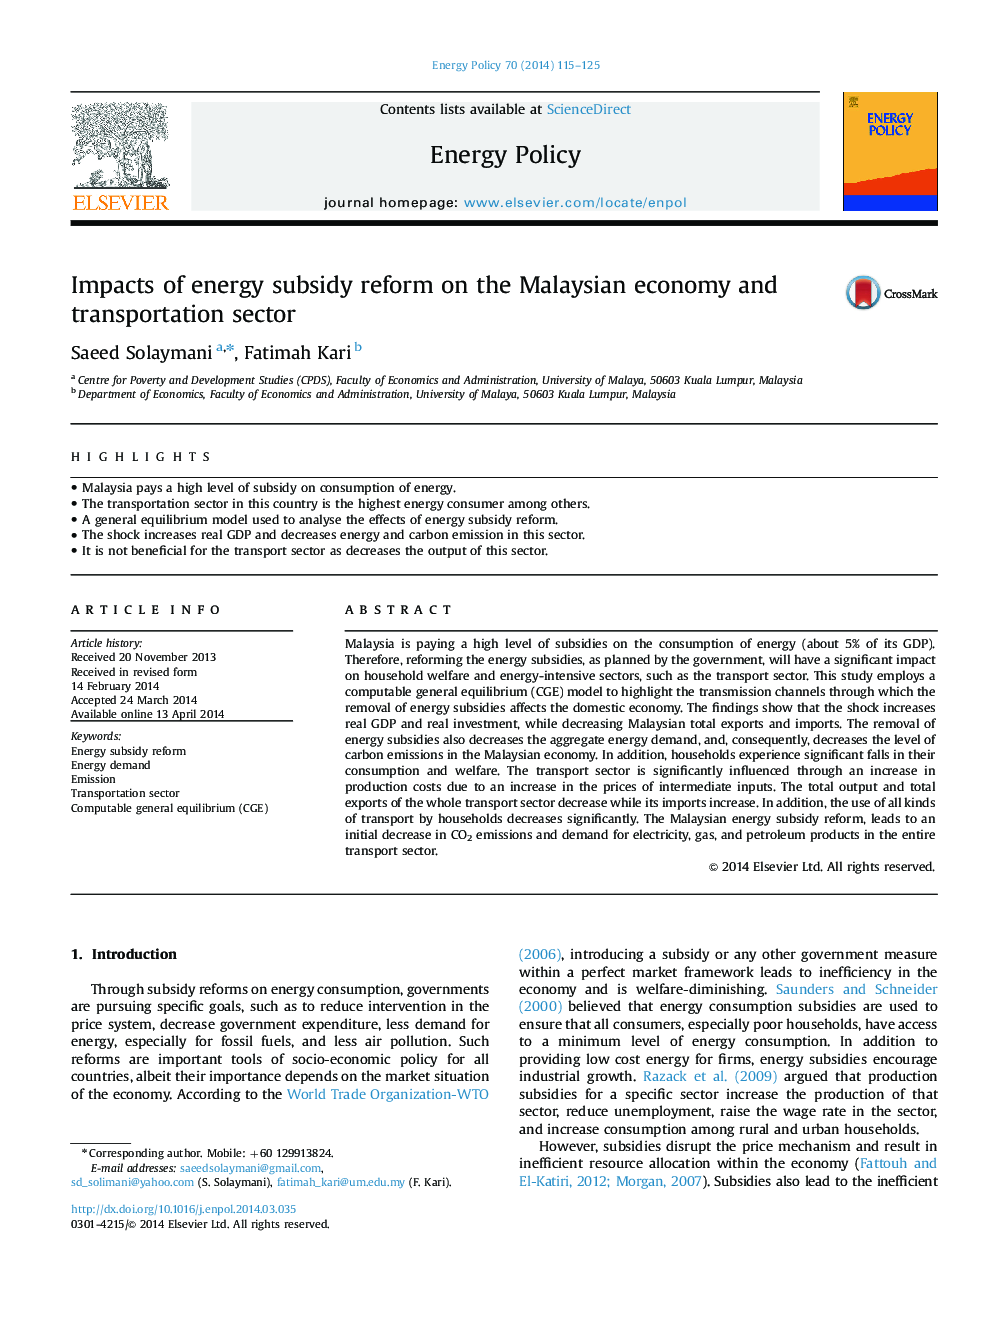 تاثیر اصلاحات یارانه انرژی بر اقتصاد و بخش حمل و نقل مالزی 